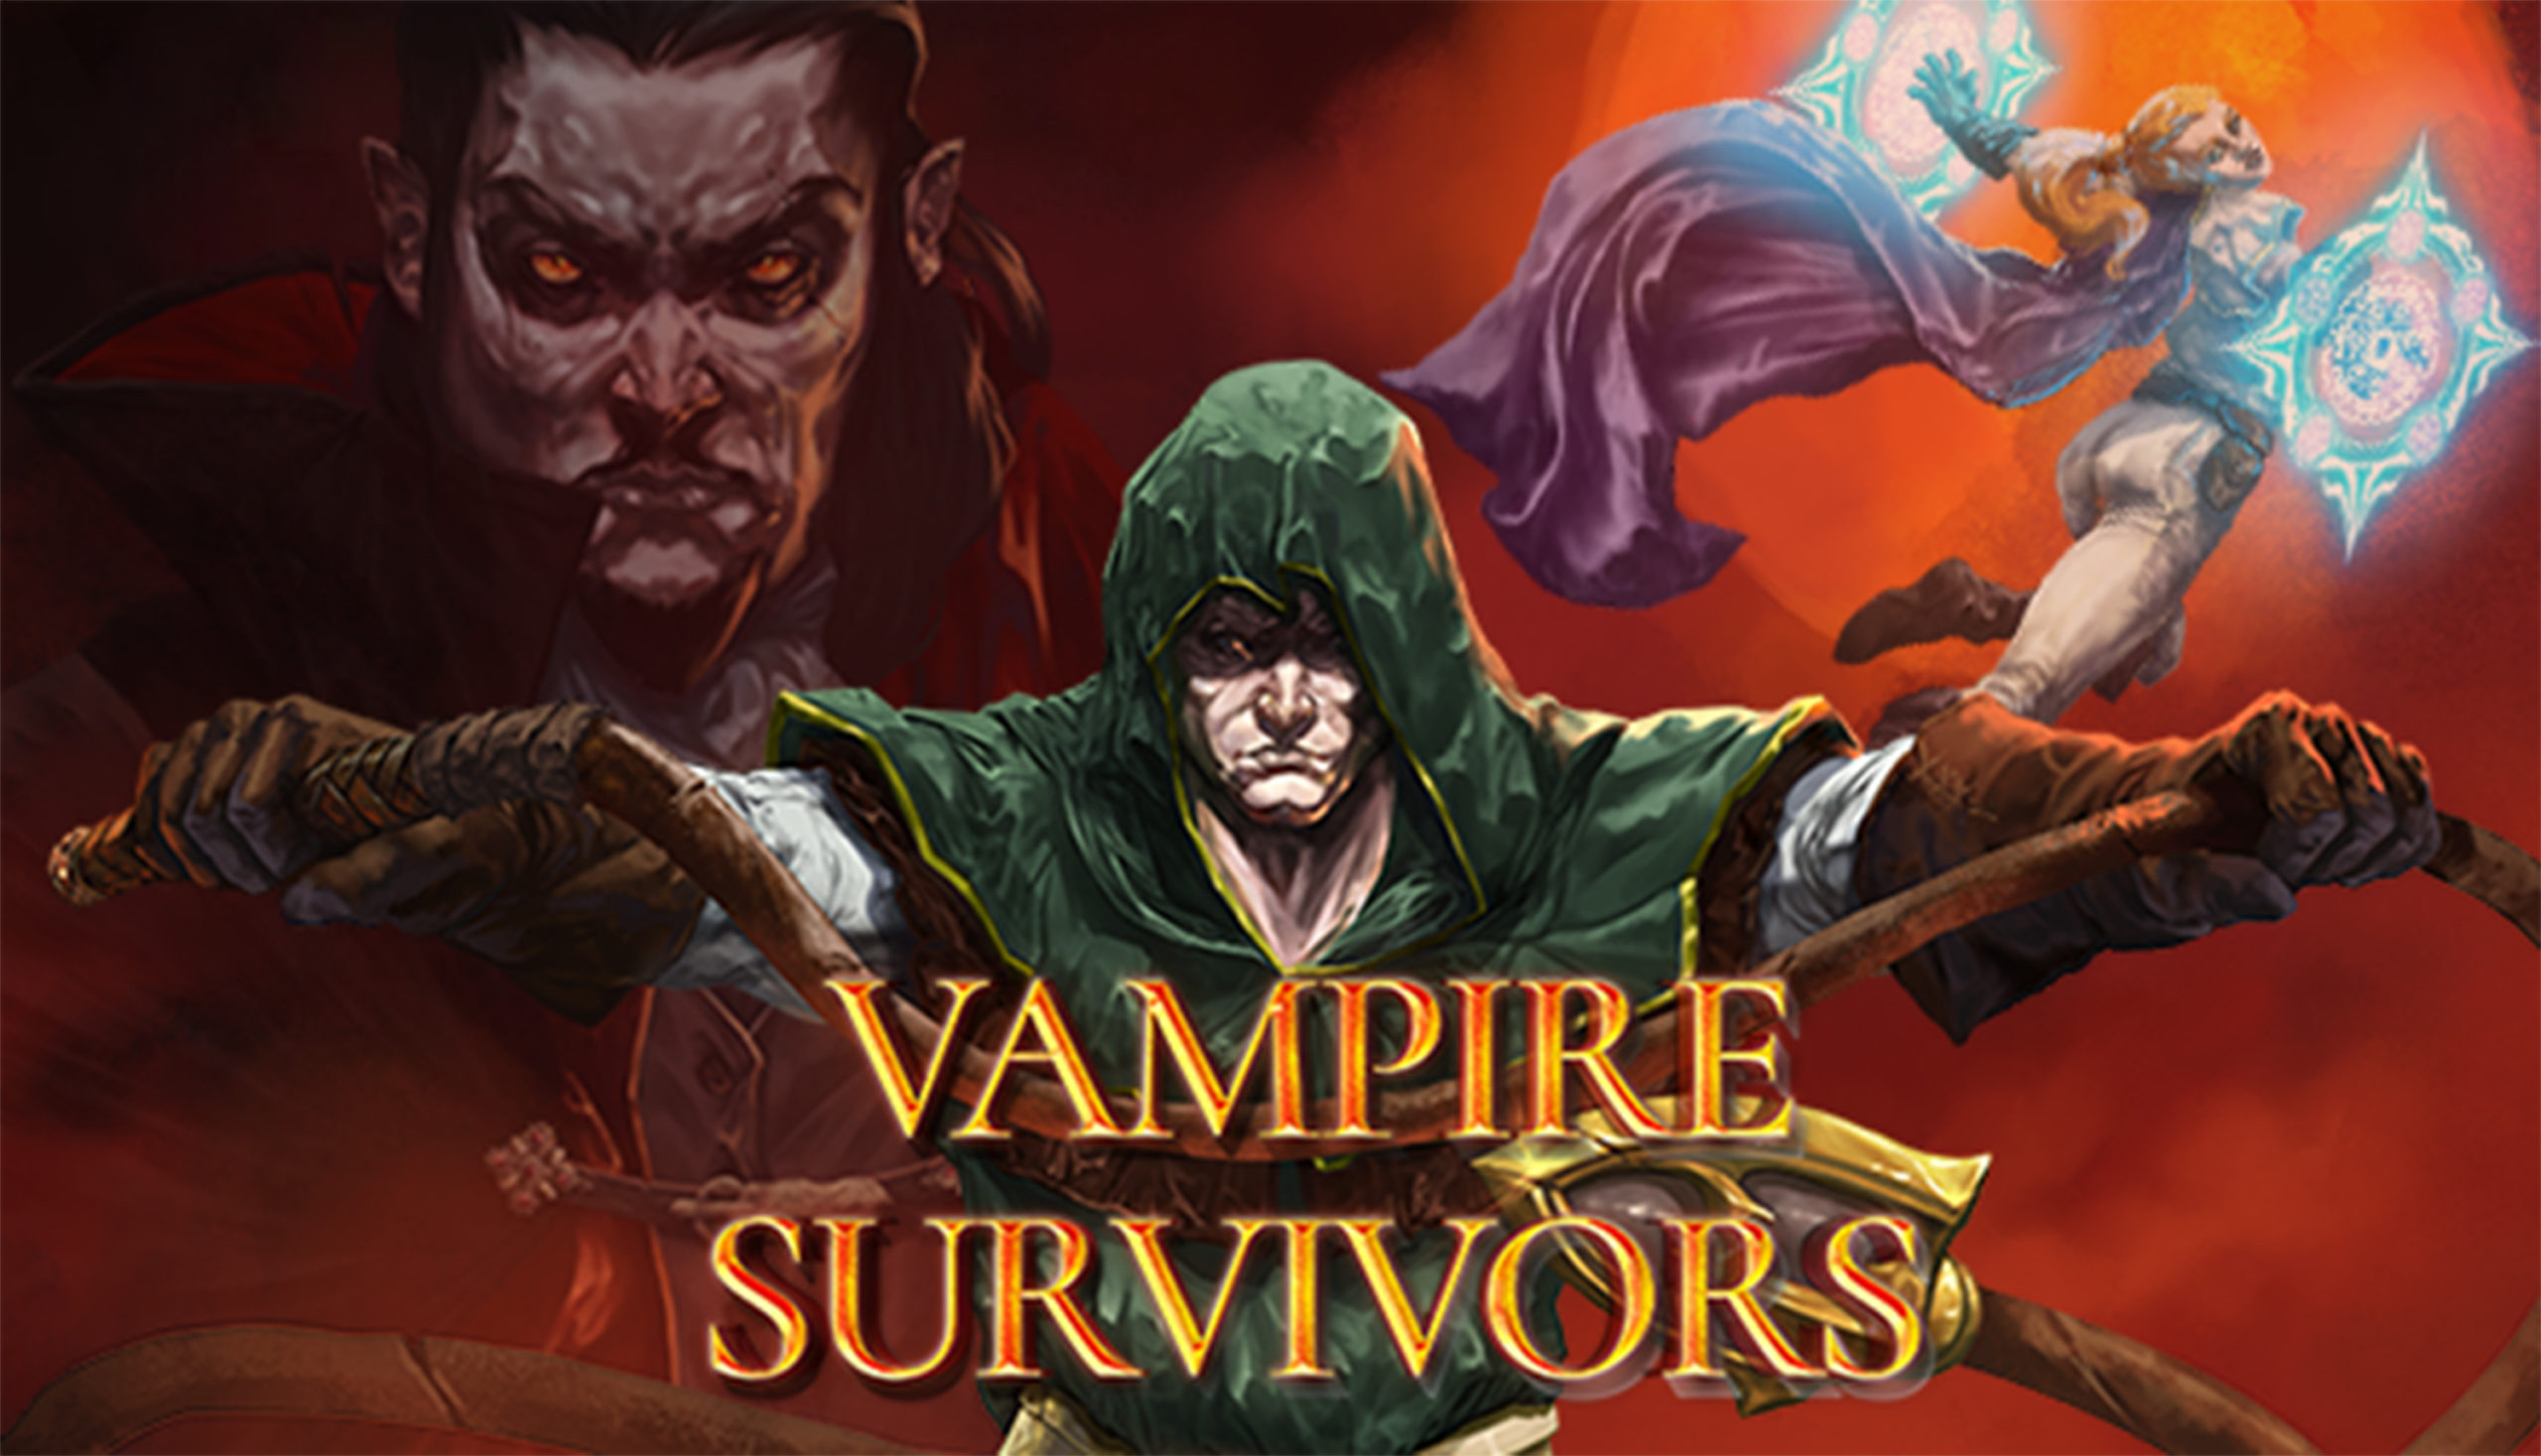 Let's Try: Spell Disk Survivor  Better than Vampire Survivors